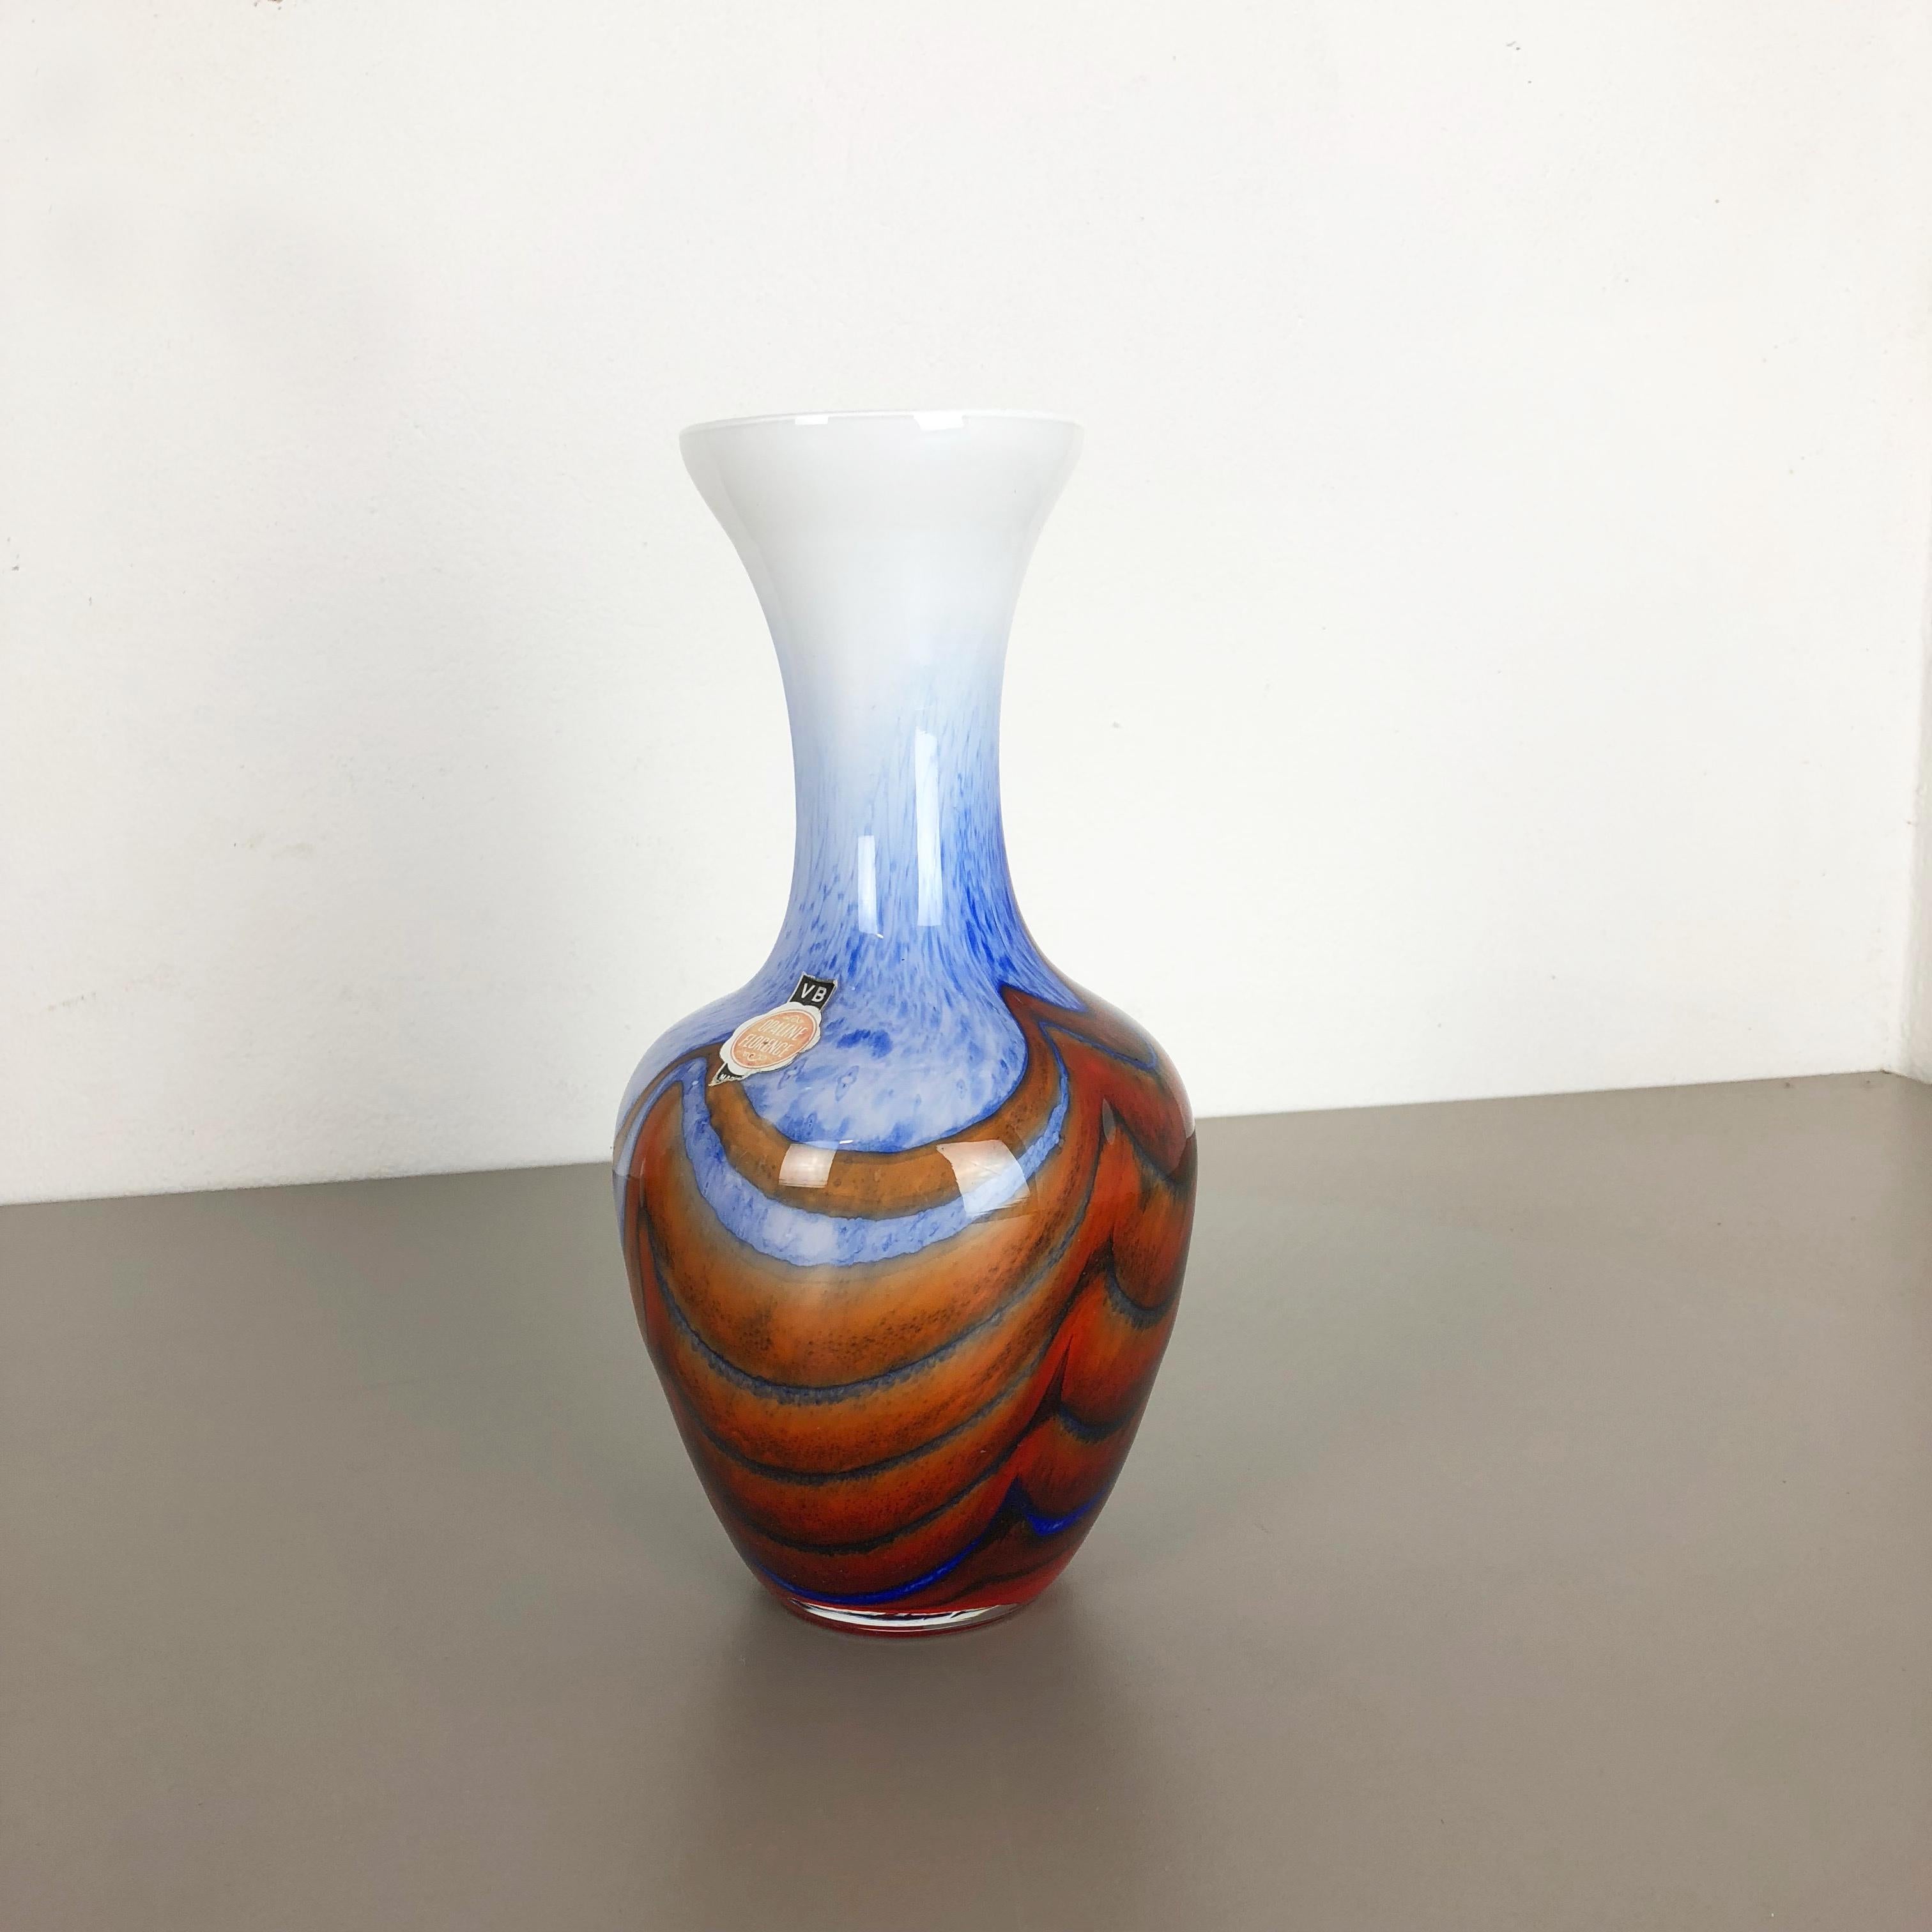 Artikel:

Pop-Art-Vase


Produzent:

Opalin Florenz




Jahrzehnt:

1970s


Beschreibungen:

Original Vintage 1970er Jahre Pop Art mundgeblasen Vase in Italien von Opaline Florenz gemacht. Hergestellt aus hochwertigem italienischem Opalglas.
Hübsche